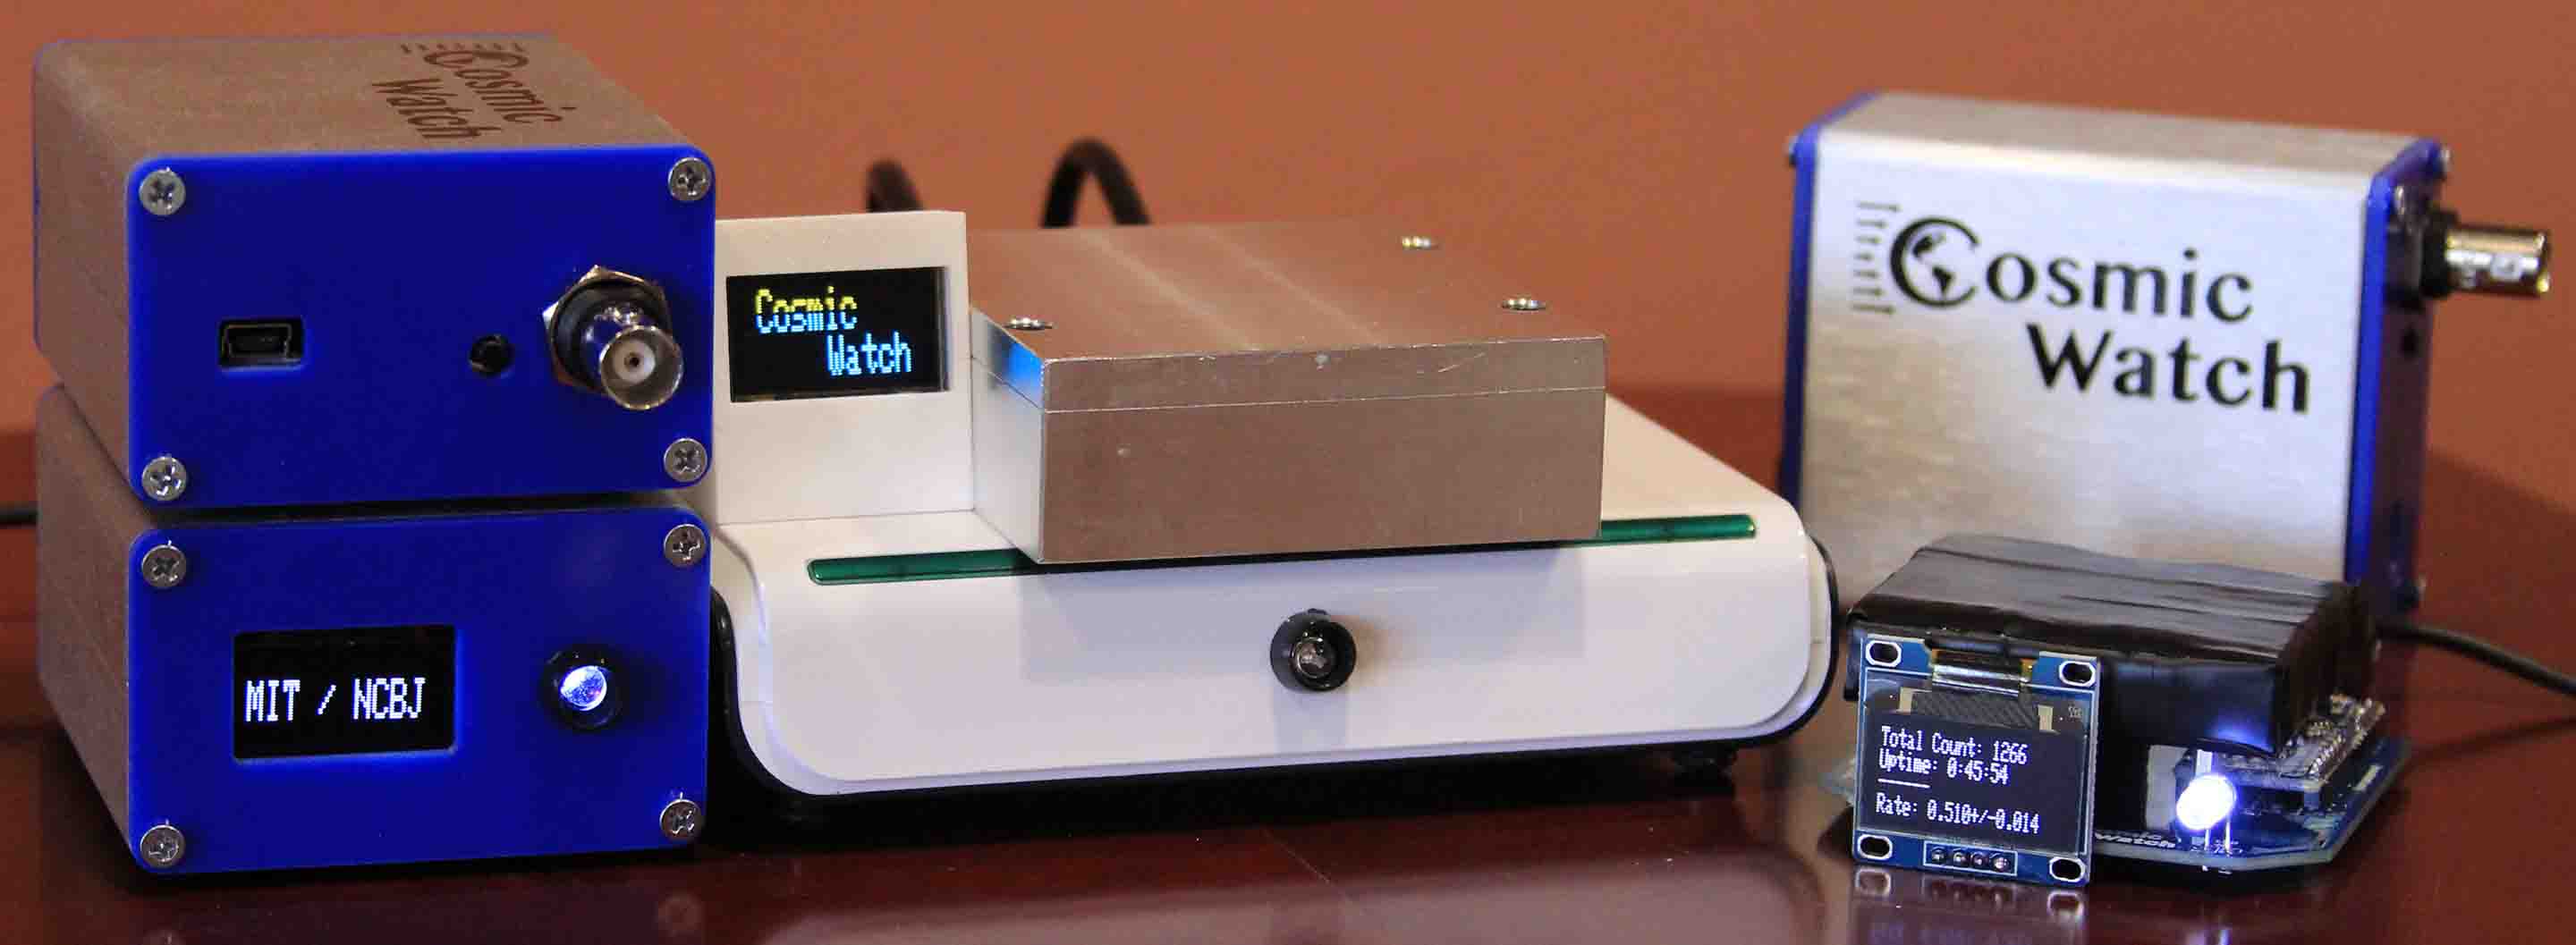 Физики из MIT разработали портативный детектор мюонов ценой в $100 - 1